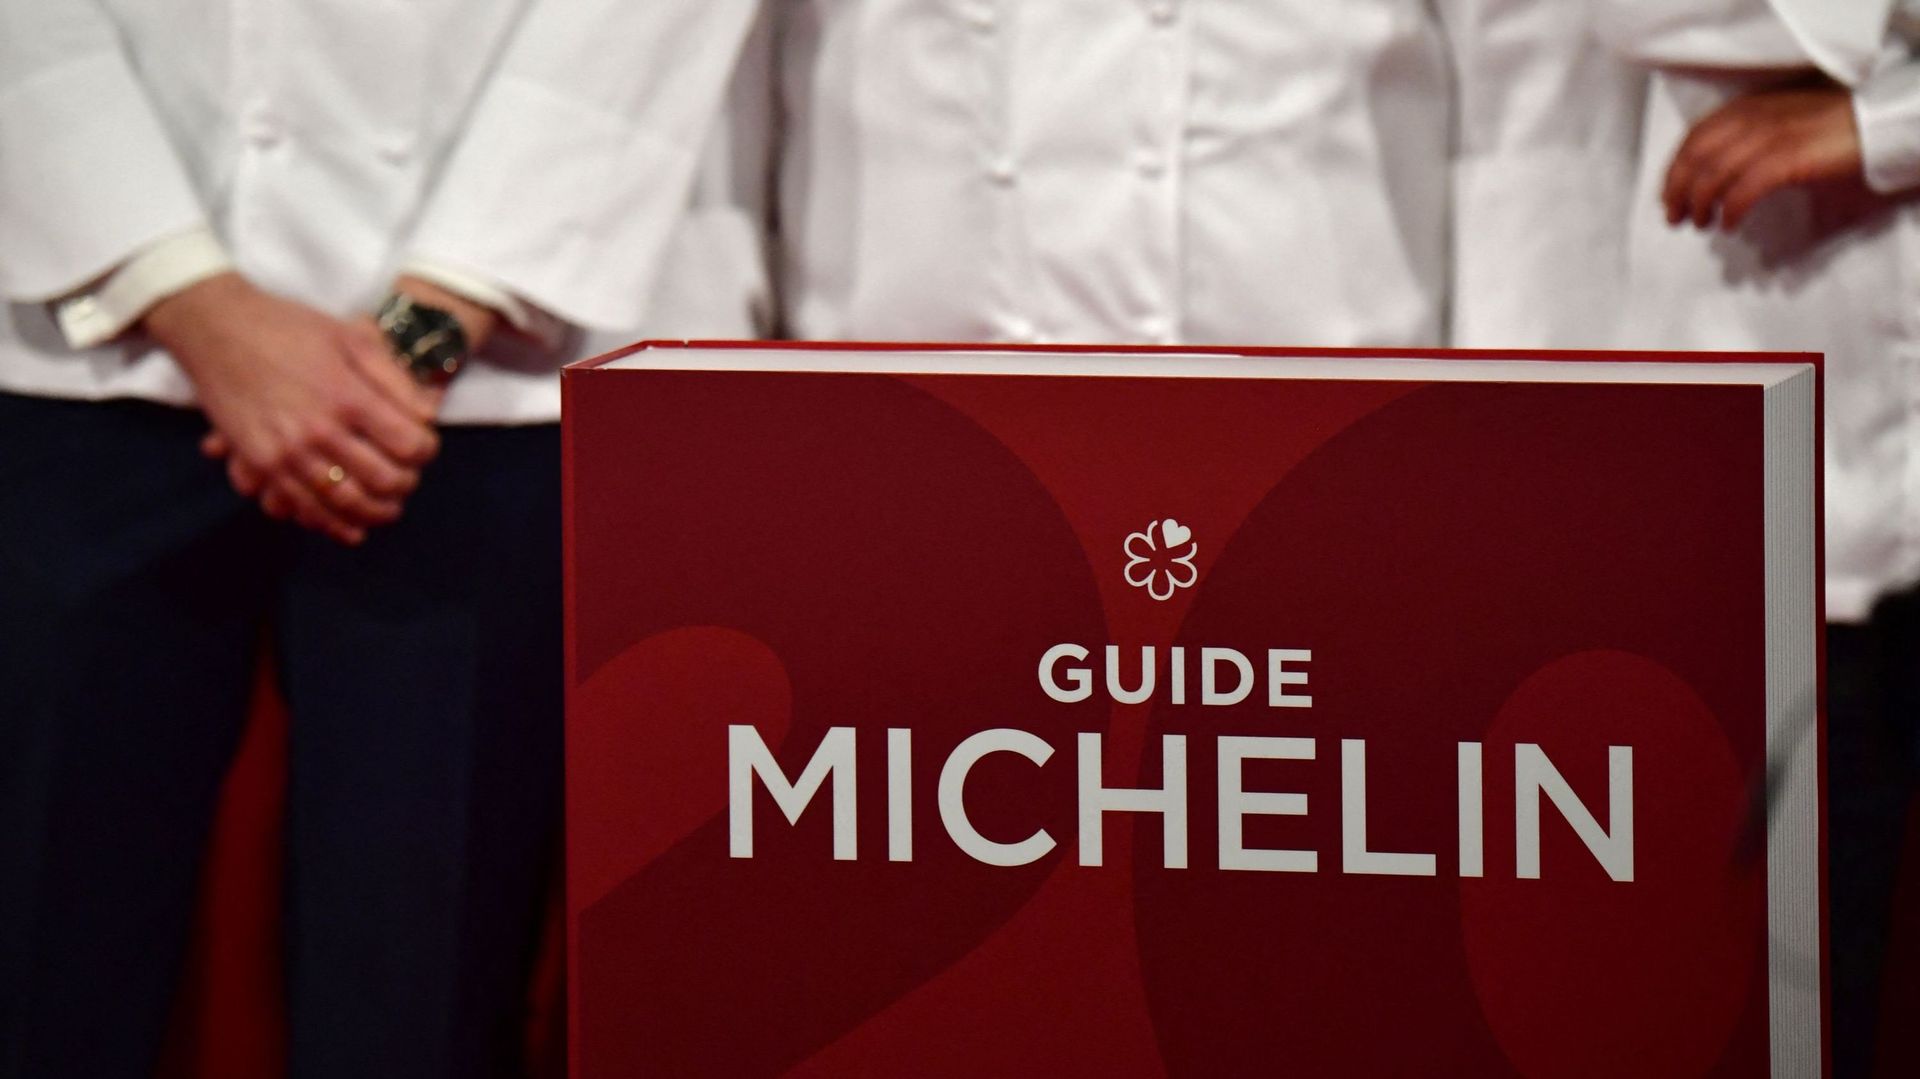 Le célèbre guide Michelin a décerné aujourd’hui ses étoiles pour les restaurants belges et luxembourgeois.